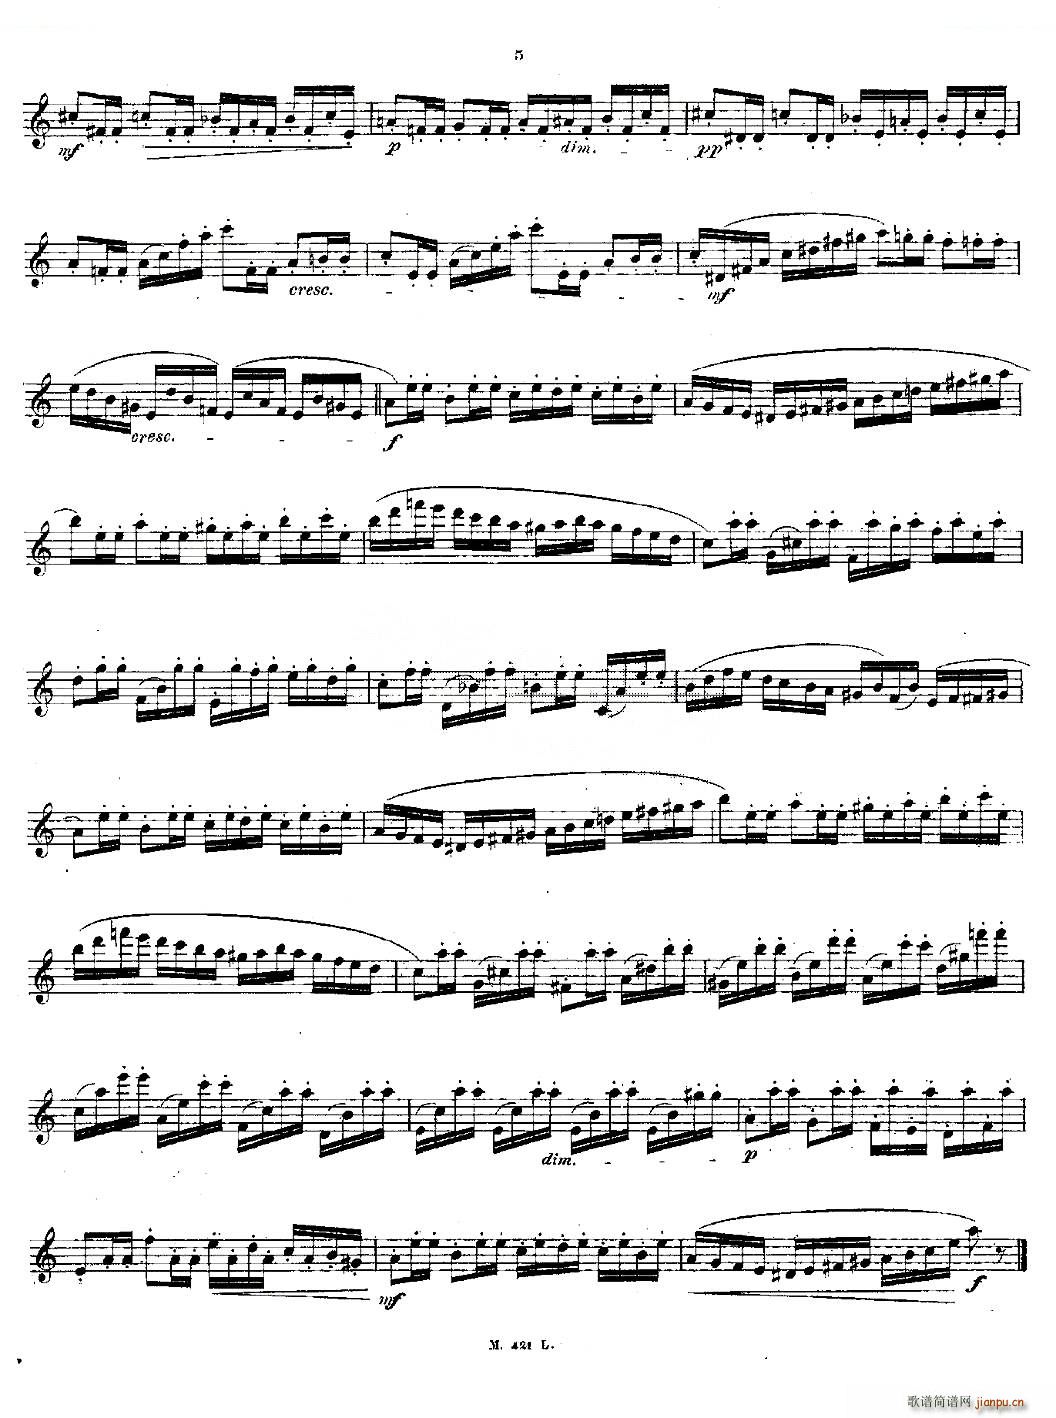 24首长笛练习曲 Op 15 之1 5 铜管(笛箫谱)5